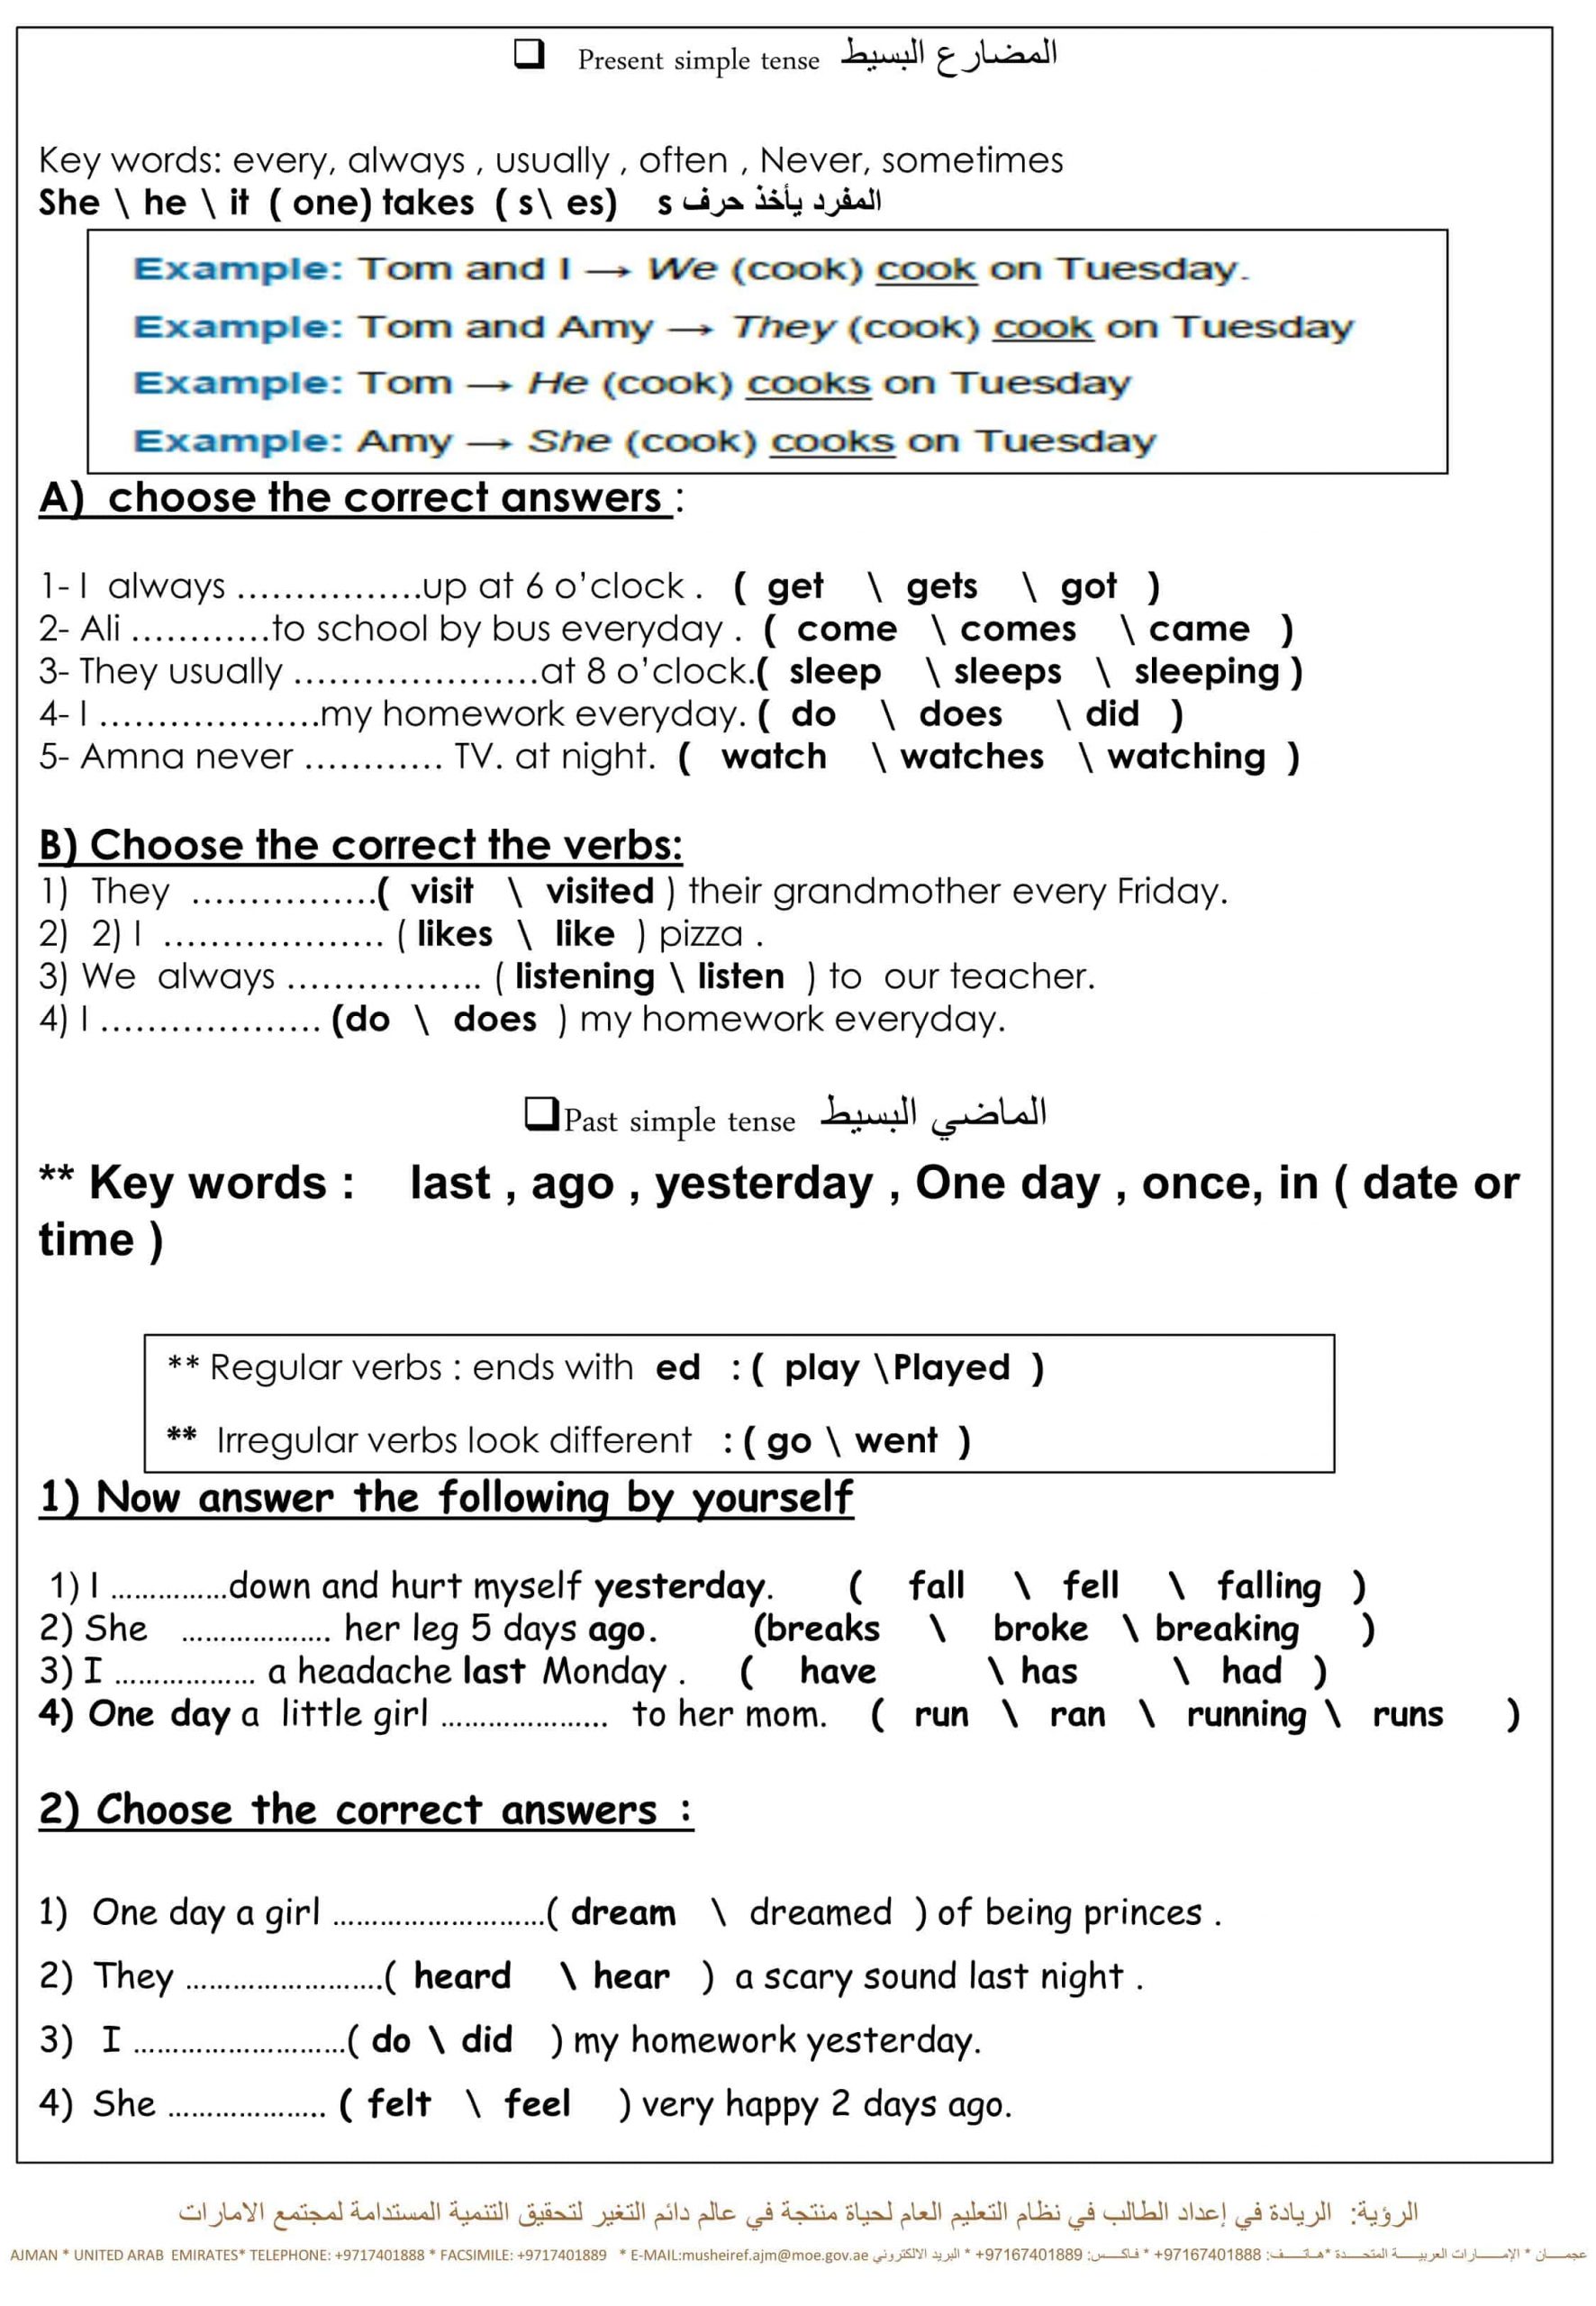 أوراق عمل مراجعة القواعد الصف الرابع مادة اللغة الإنجليزية 